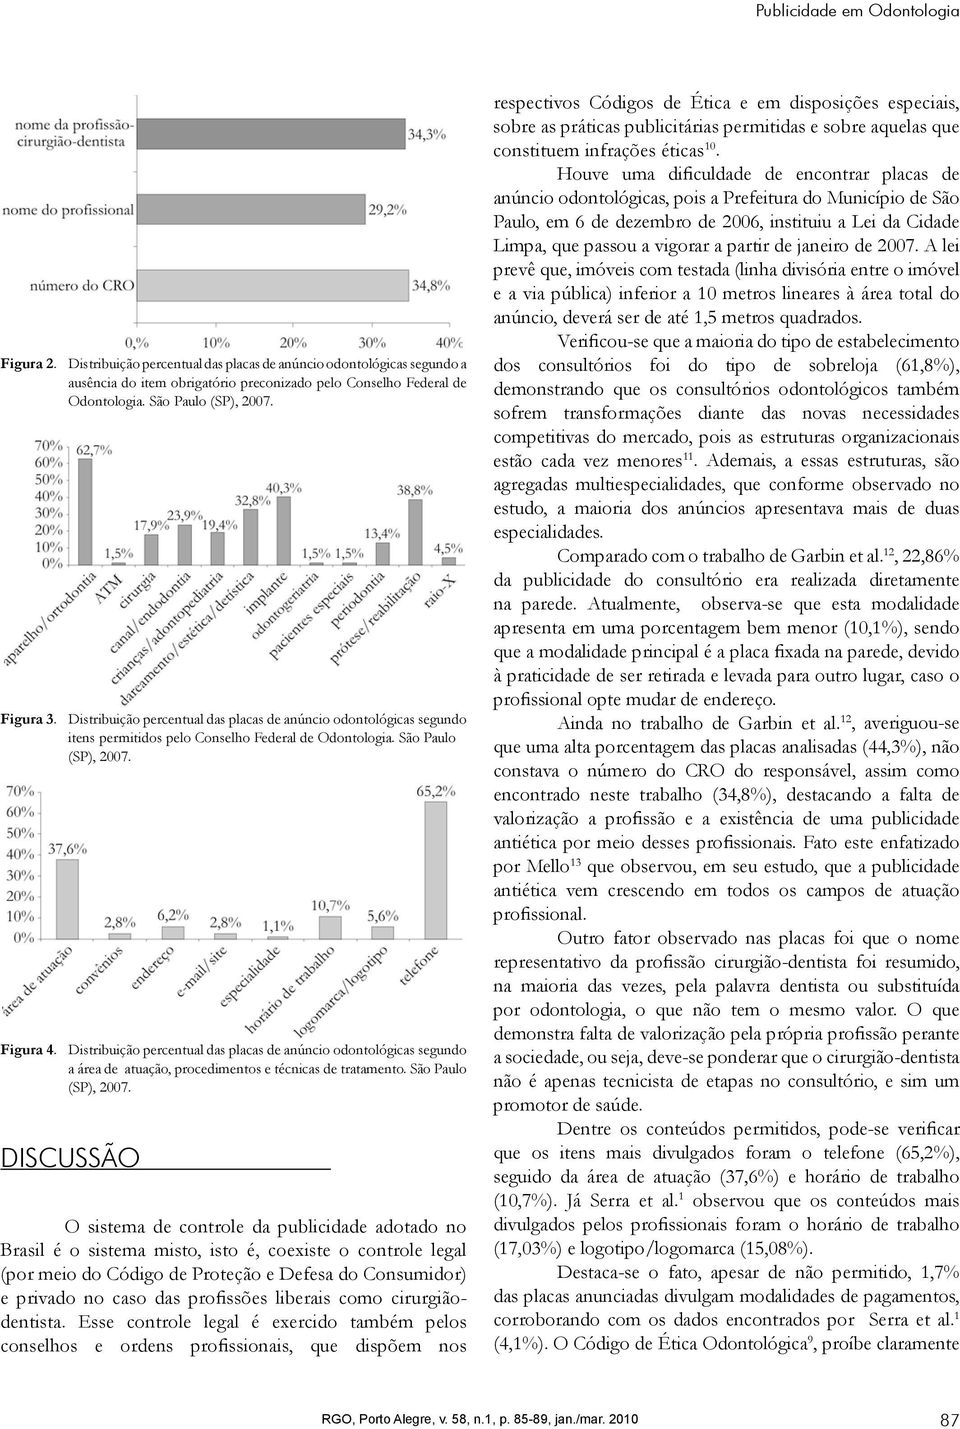 Distribuição percentual das placas de anúncio odontológicas segundo a área de atuação, procedimentos e técnicas de tratamento. São Paulo (SP), 2007.